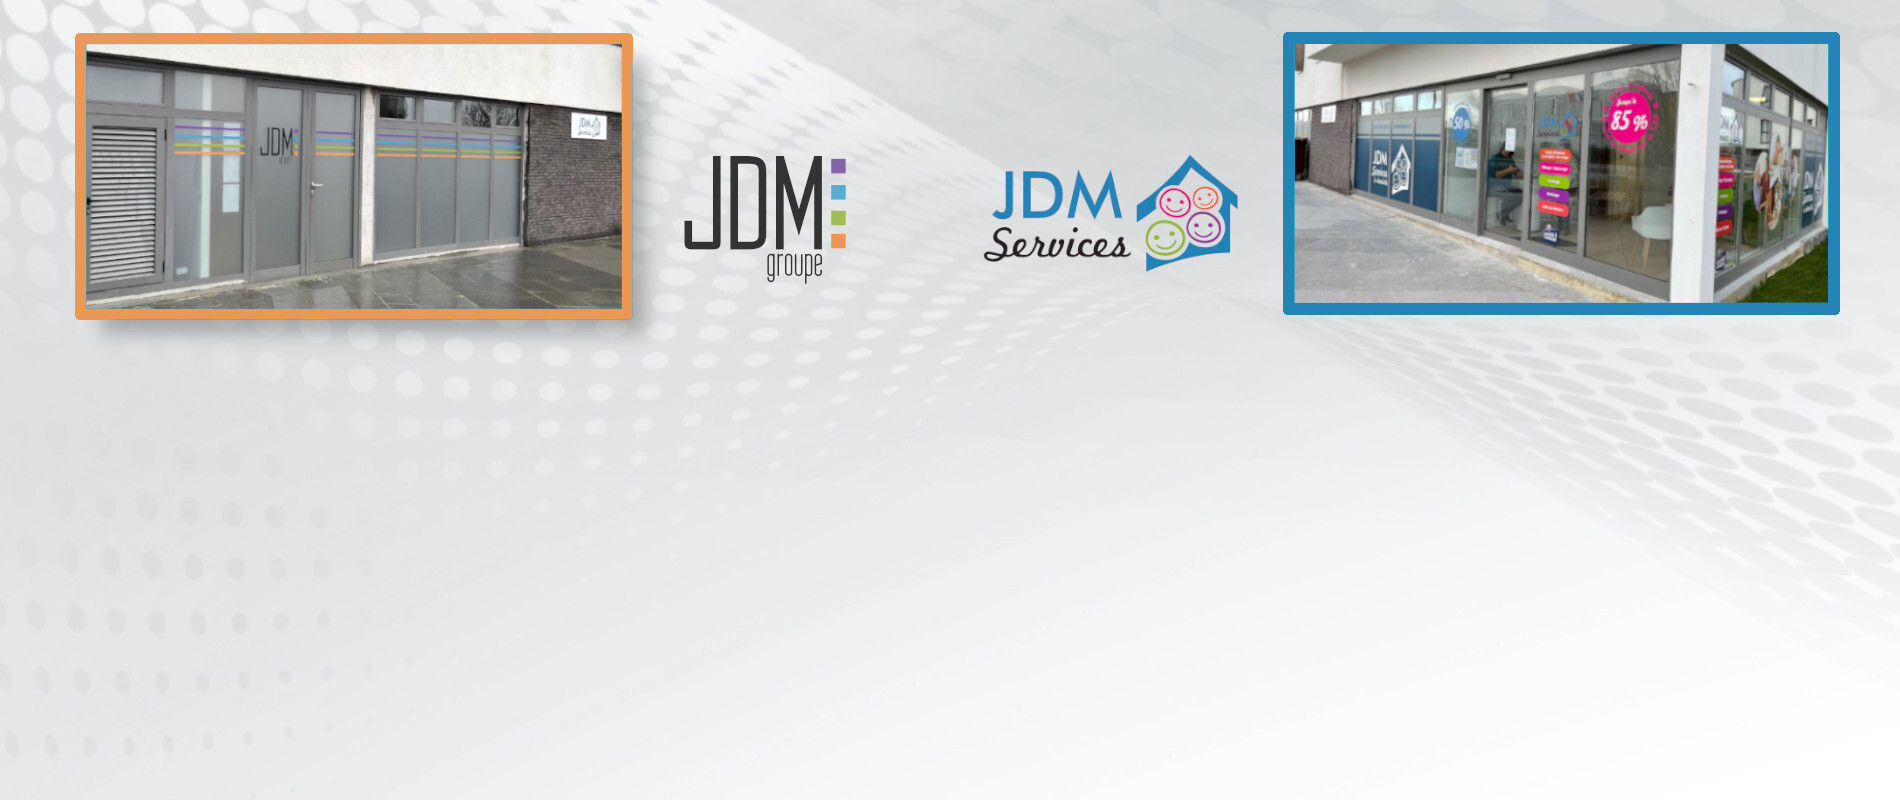 Une toute nouvelle agence JDM Services vient d'ouvrir !